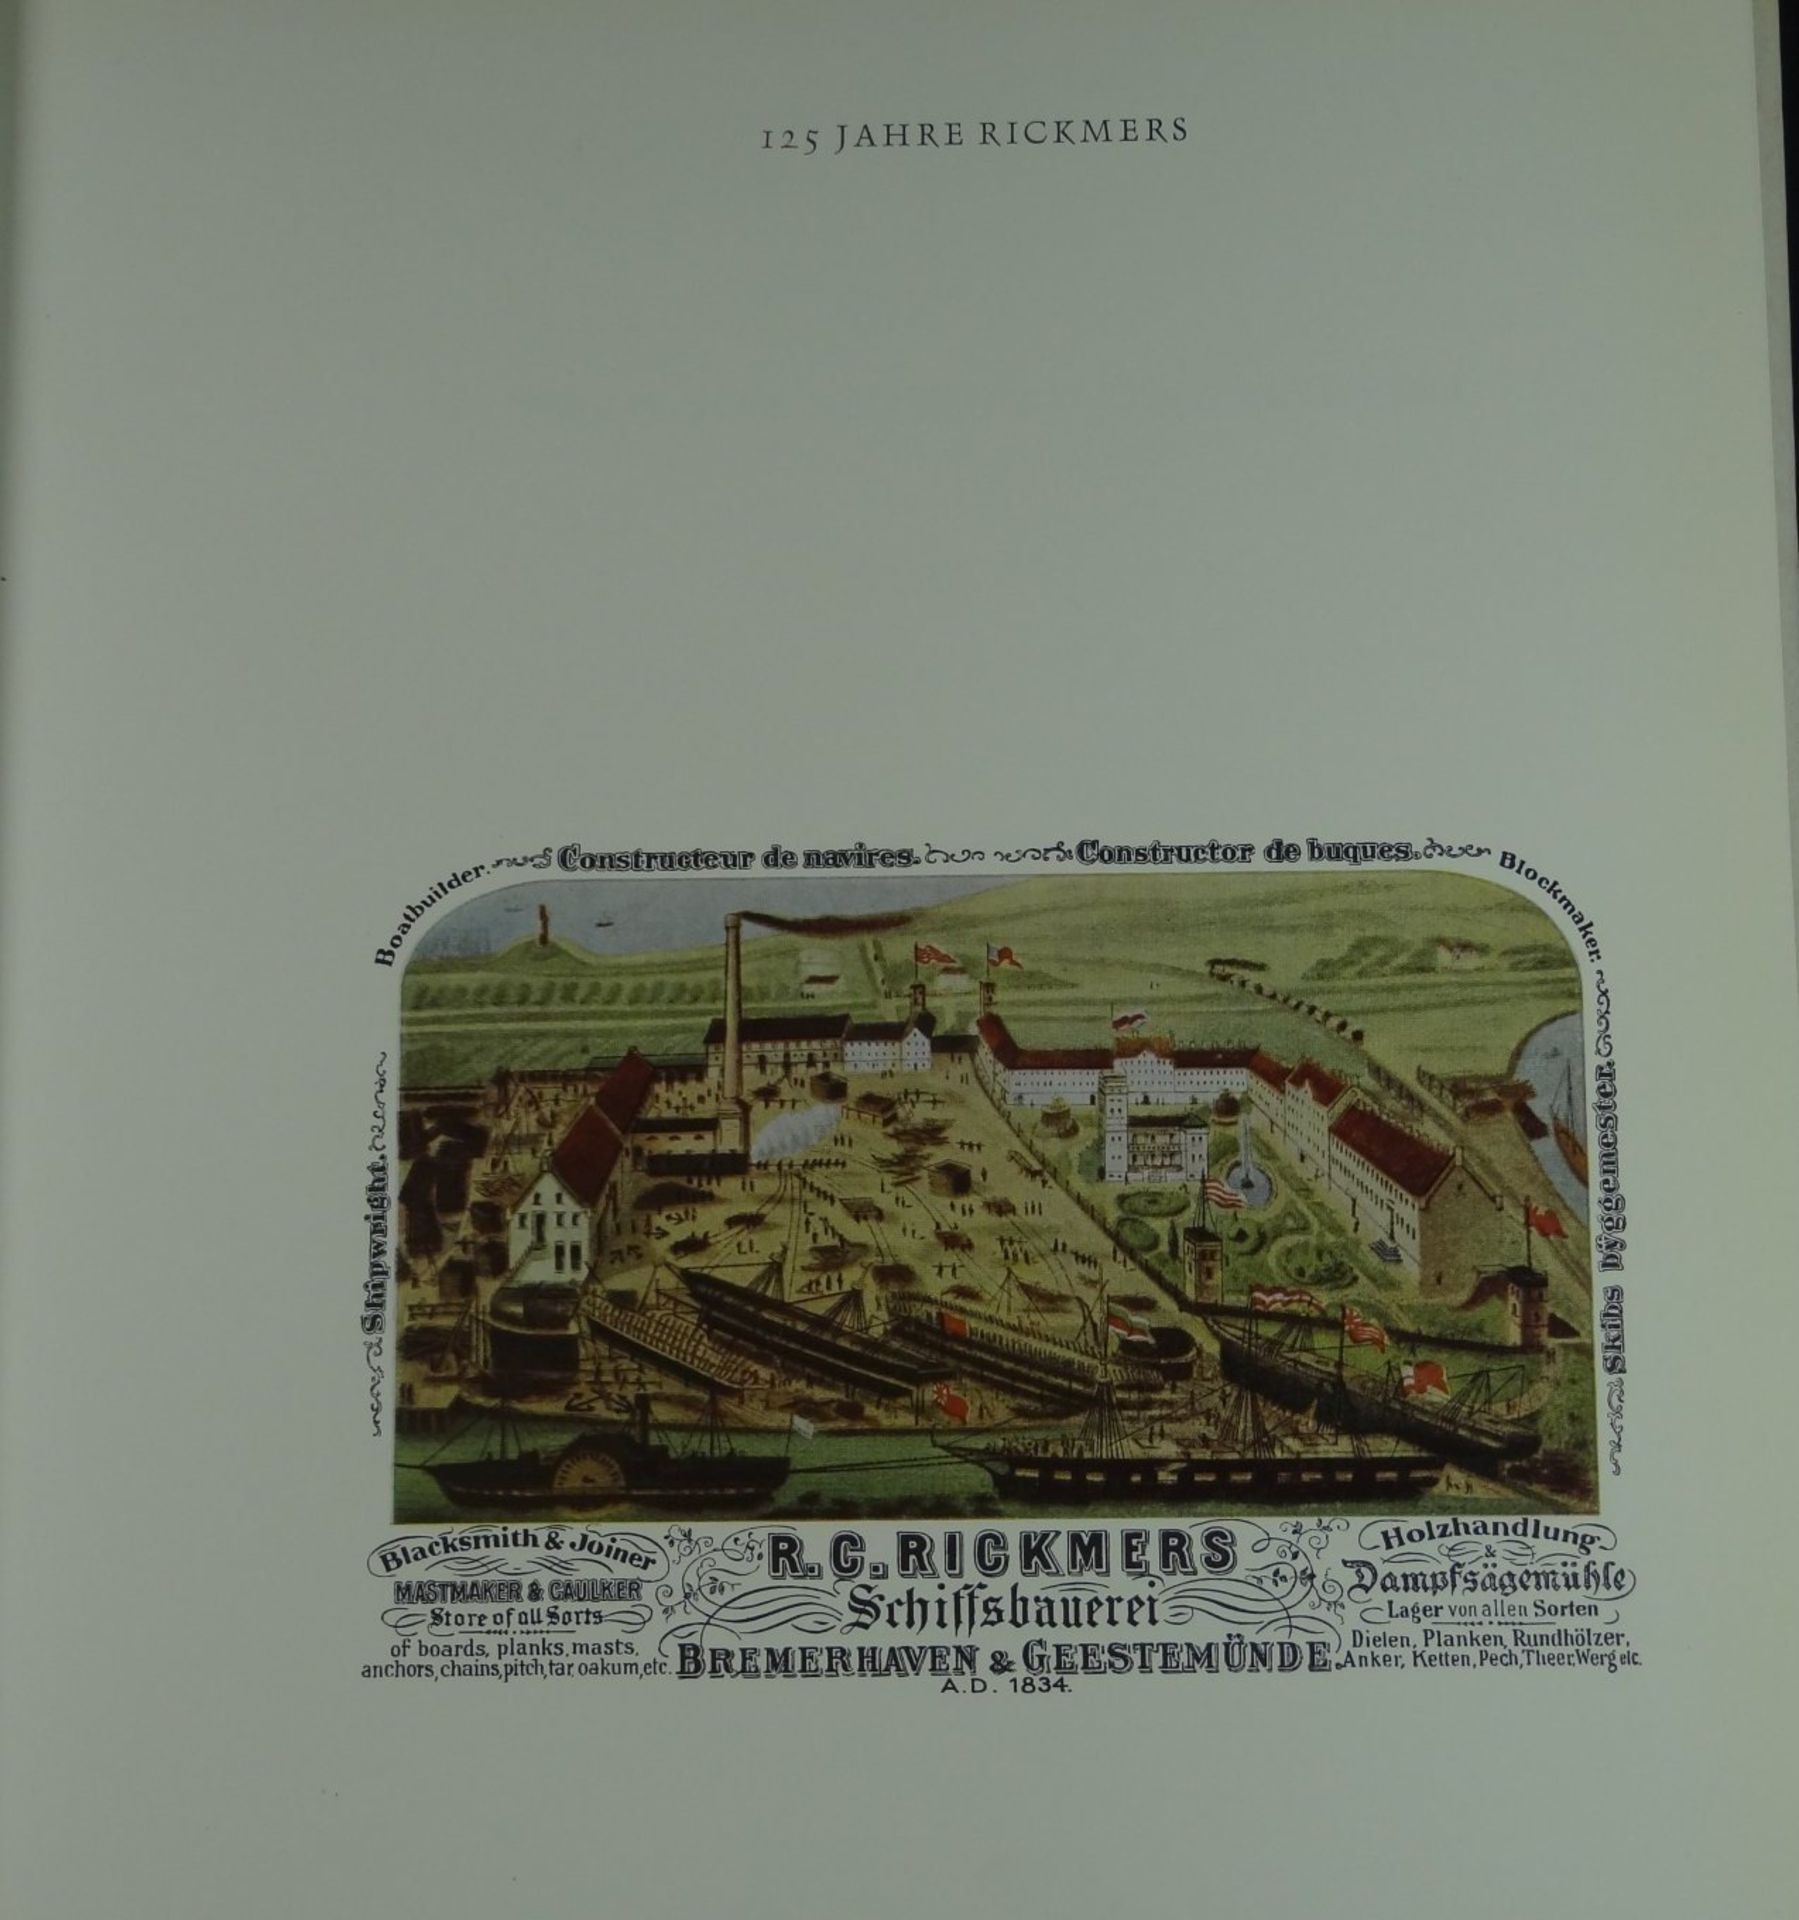 Firmenschrift "125 Jahre Rickmers Werft, Bremerhaven", 27x23 cm - Image 2 of 7